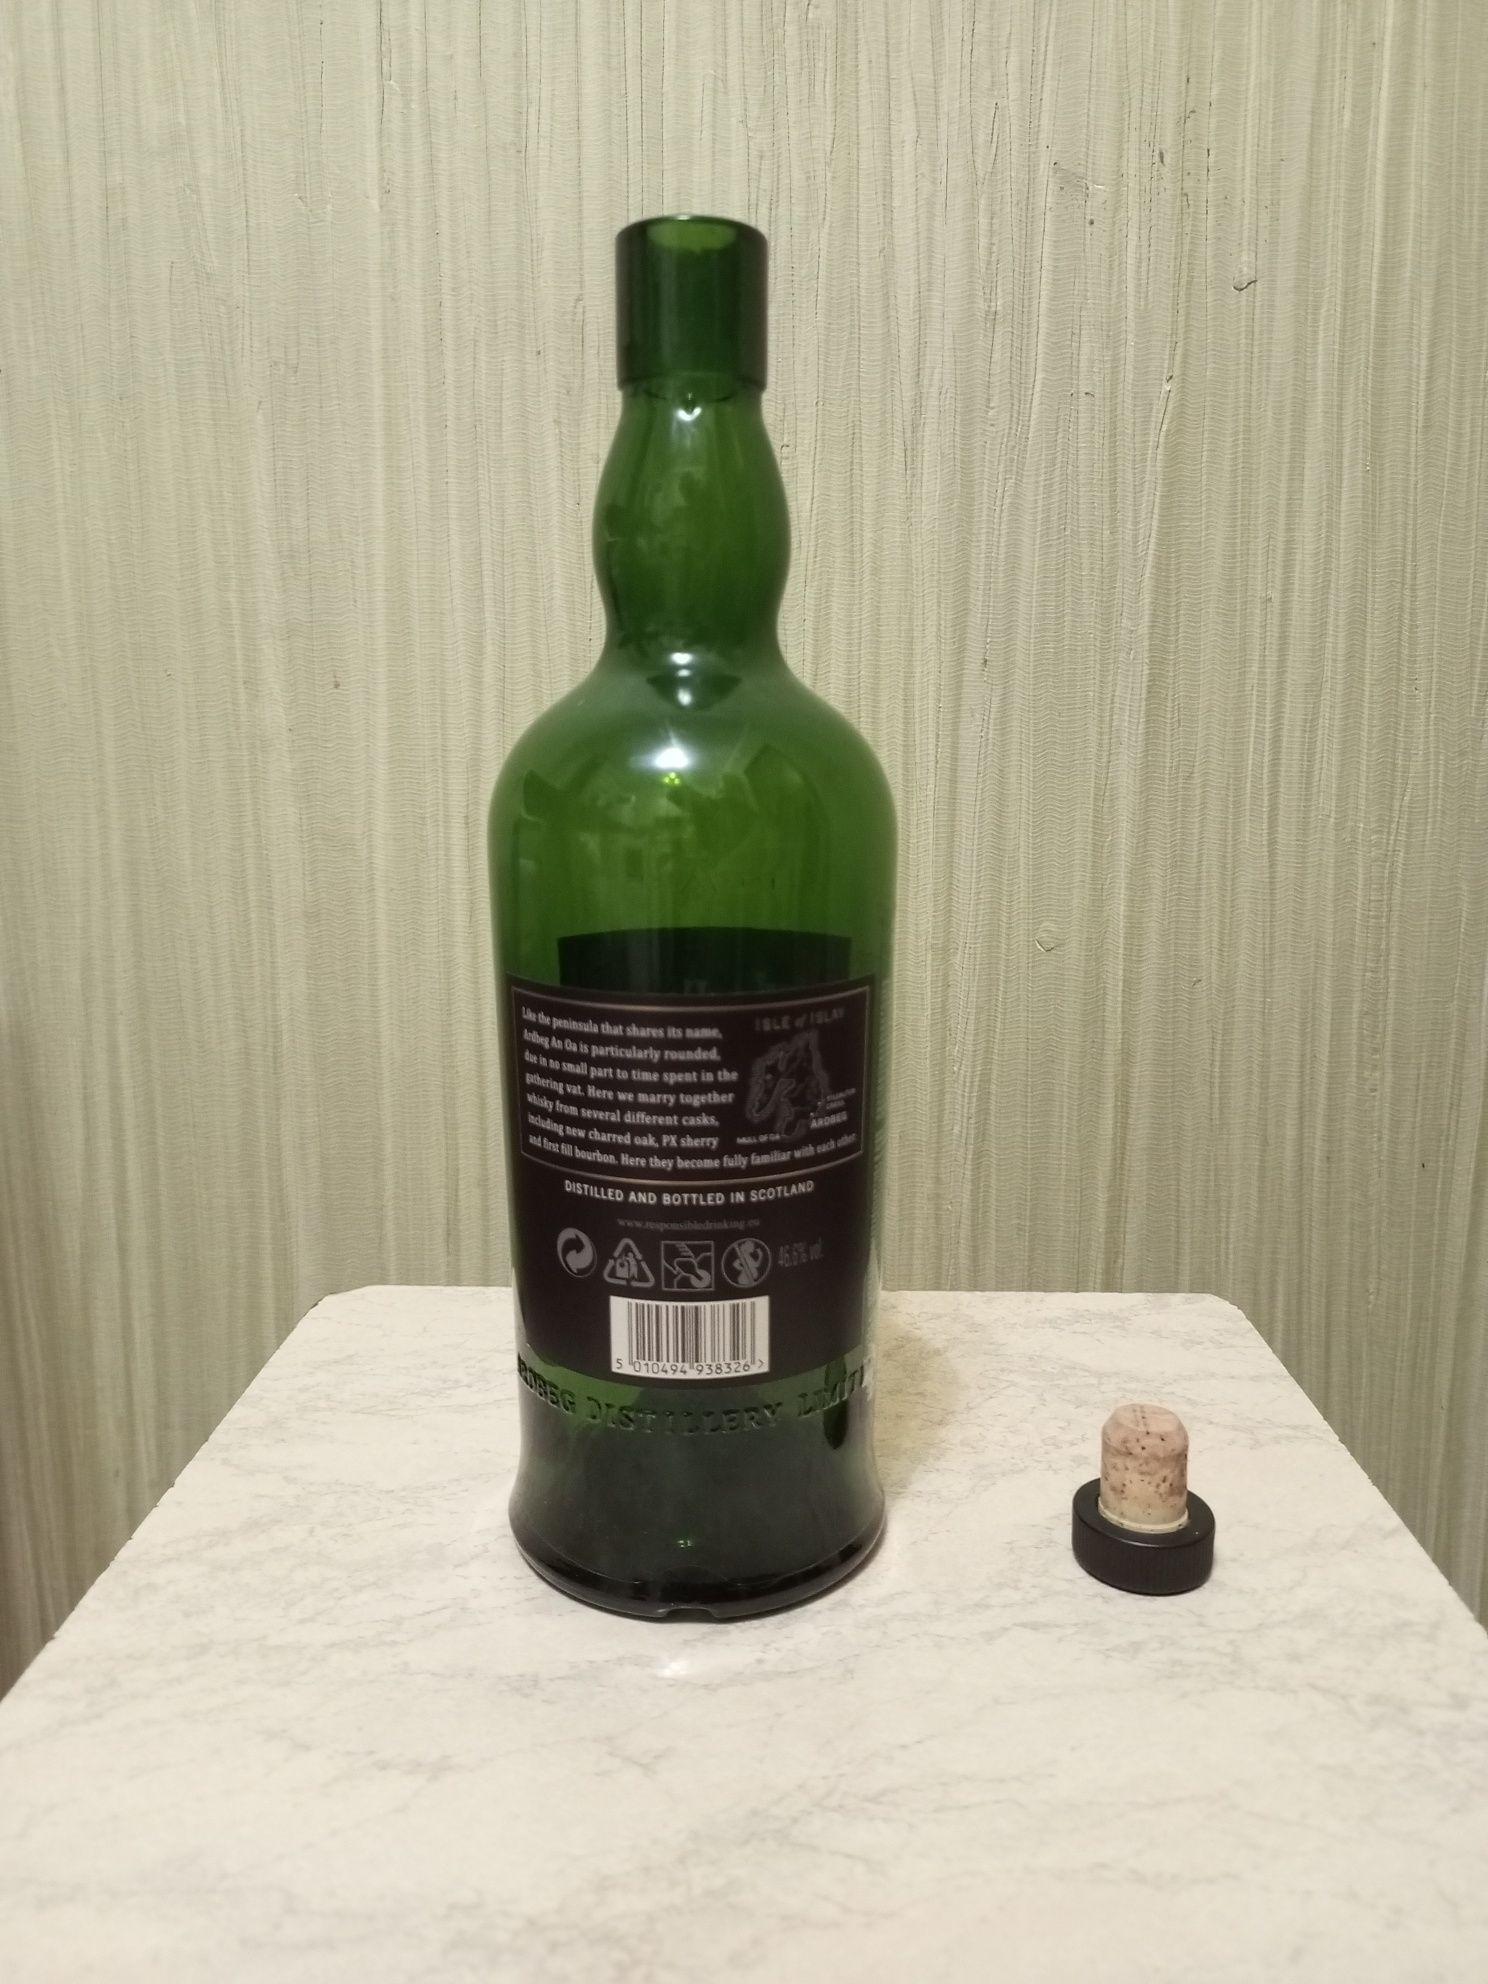 Пустая бутылка из под виски Ardbeg AN OA